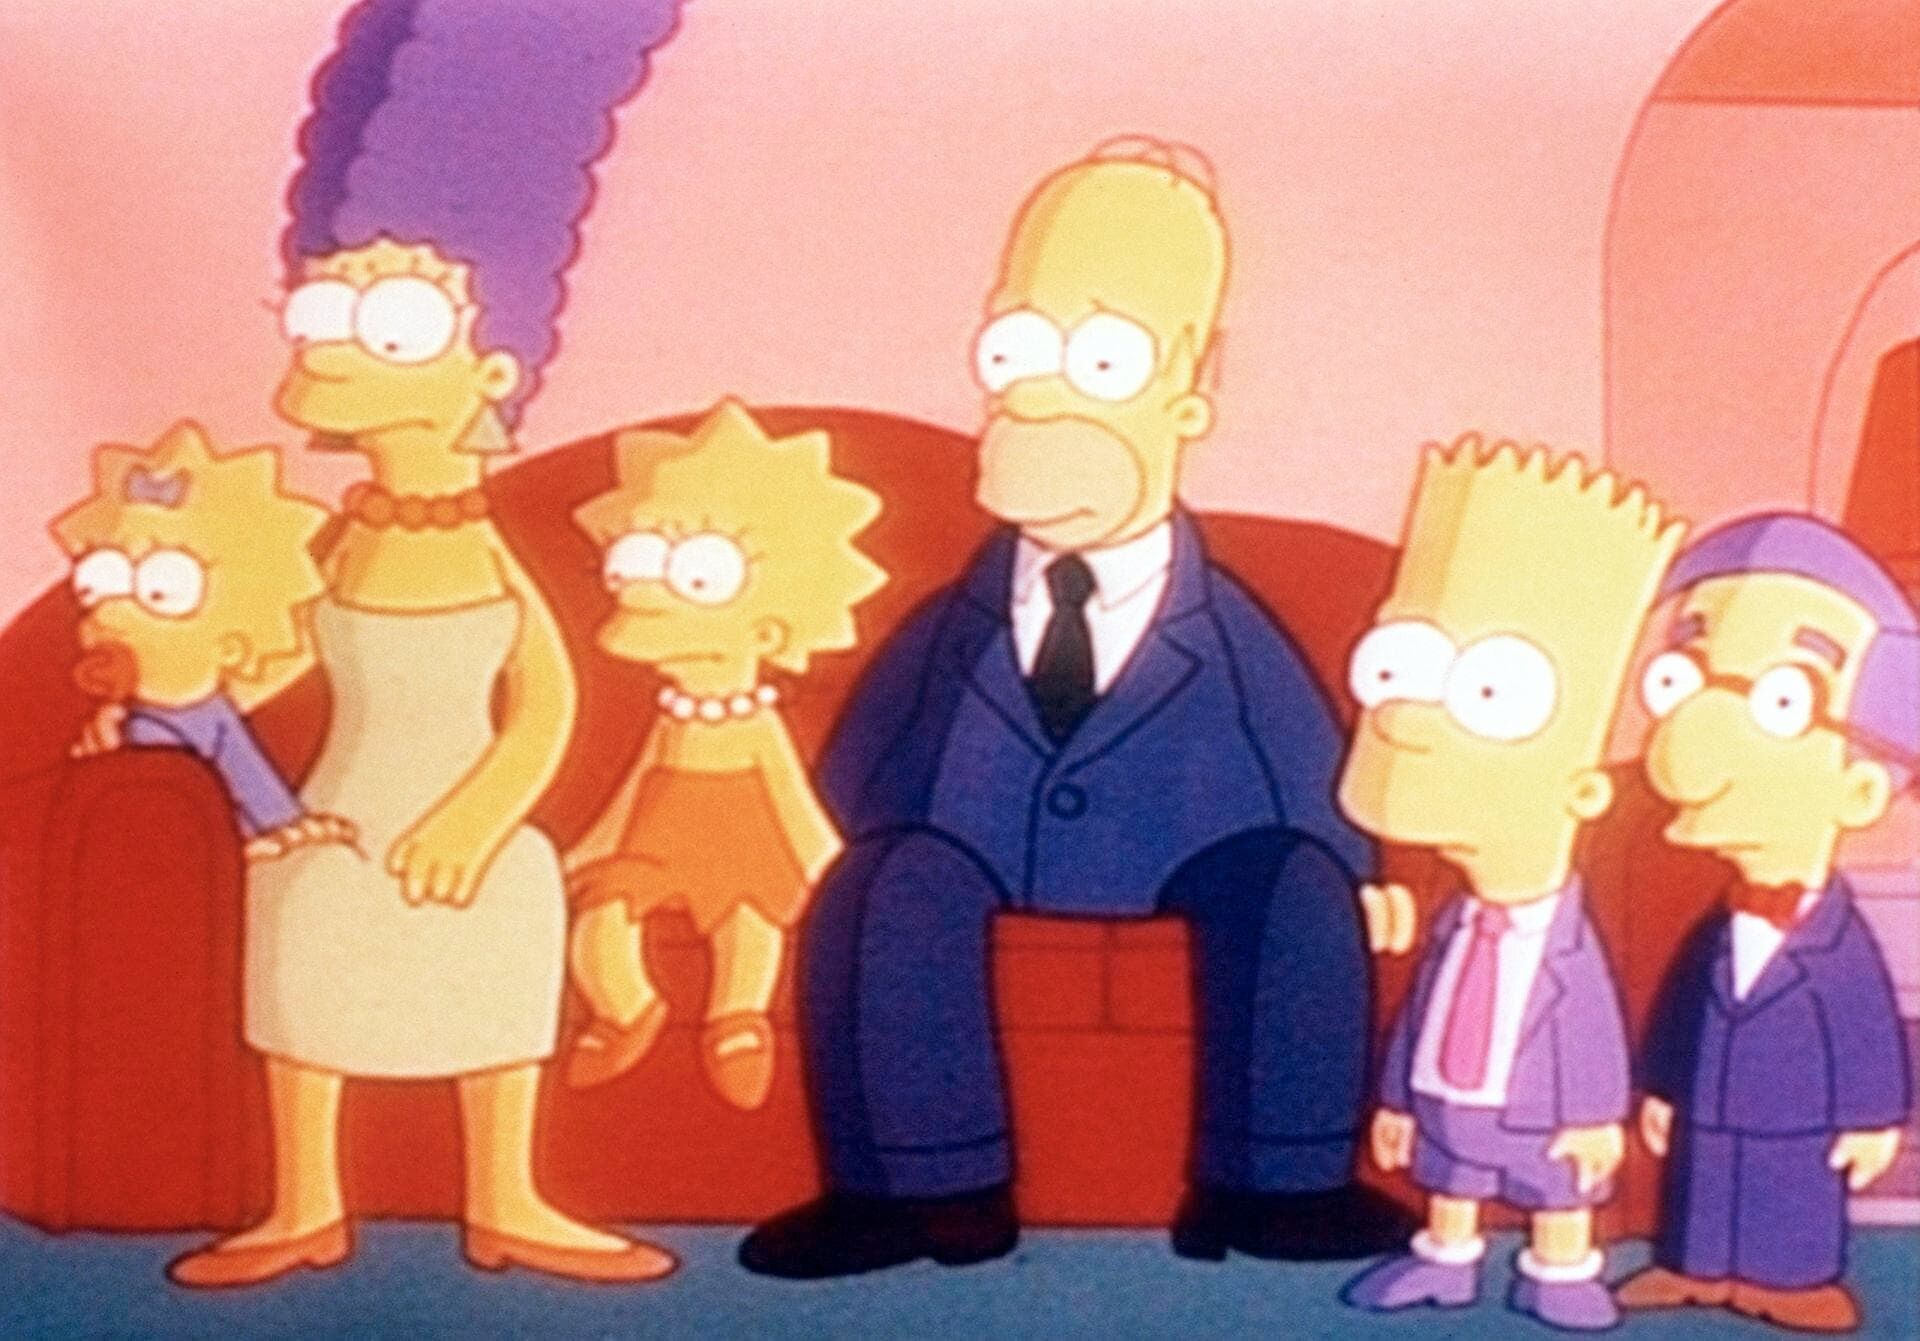 The Simpsons - Like Father, Like Clown